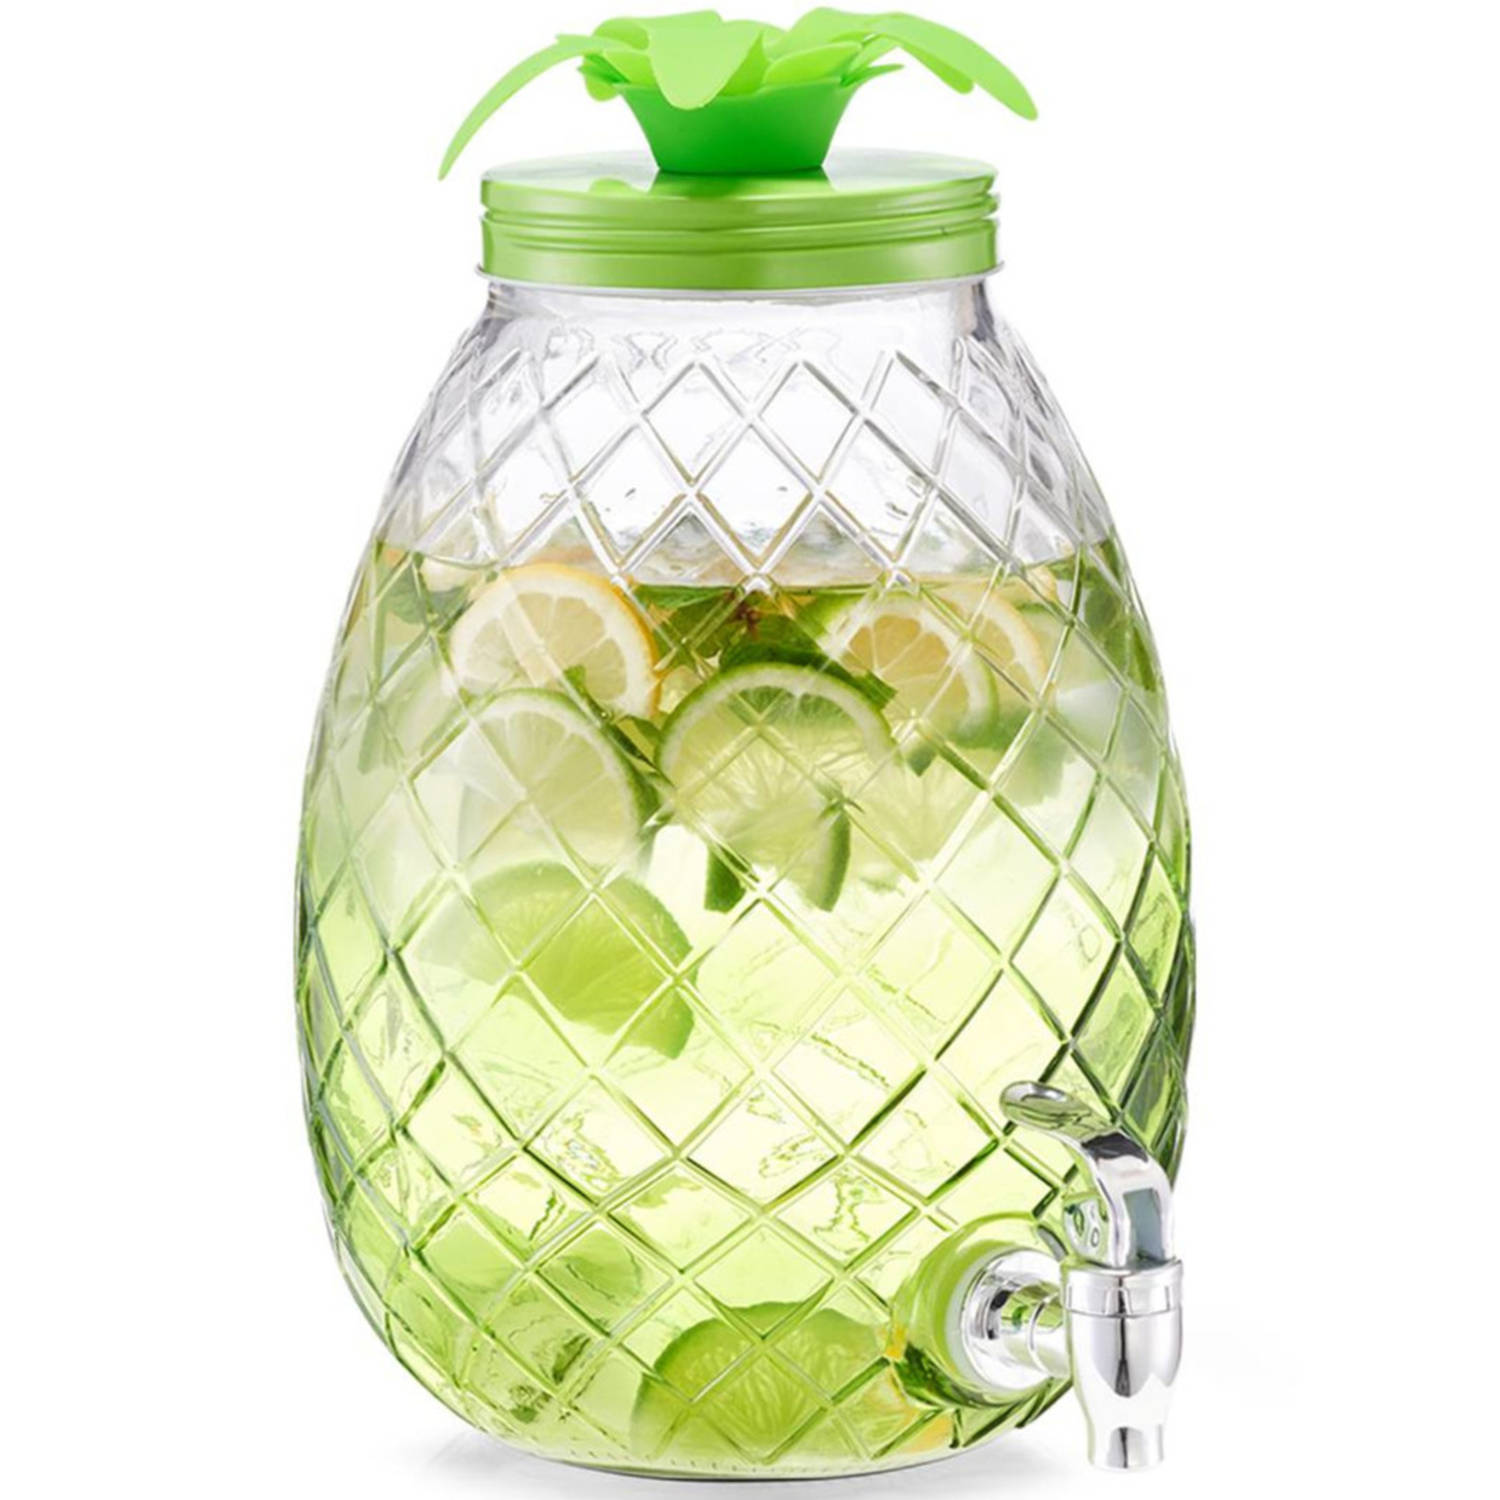 1x Groene glazen drank dispensers ananas 4,5 liter - Zeller - Keukenbenodigdheden - Zomers/tropisch tuinfeest decoratie - Dranken serveren - Drankdispensers - Dispensers voor o.a.